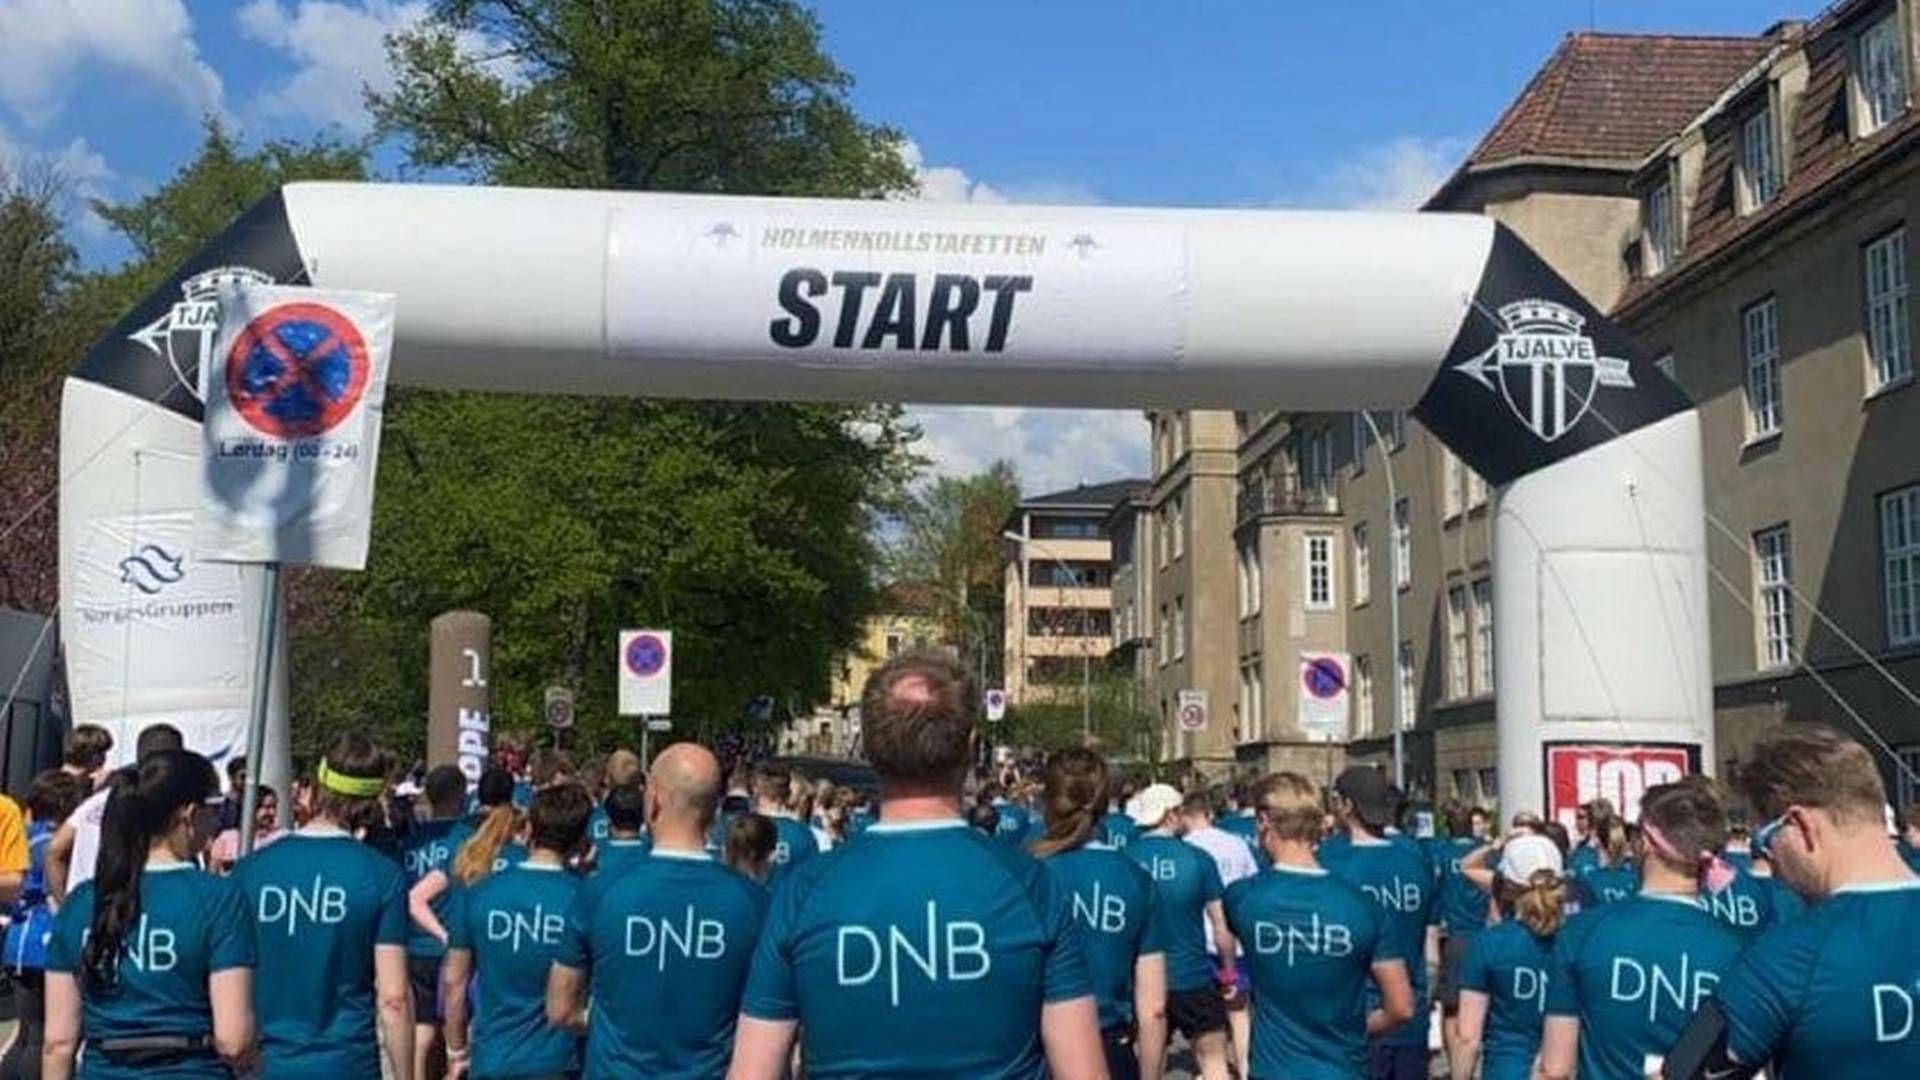 PÅ STARTSTREKEN: I fjor stilte DNB med 125 lag på Holmenkollstafetten. I året løper enda flere DNB-ansatte i stafetten. | Foto: DNB